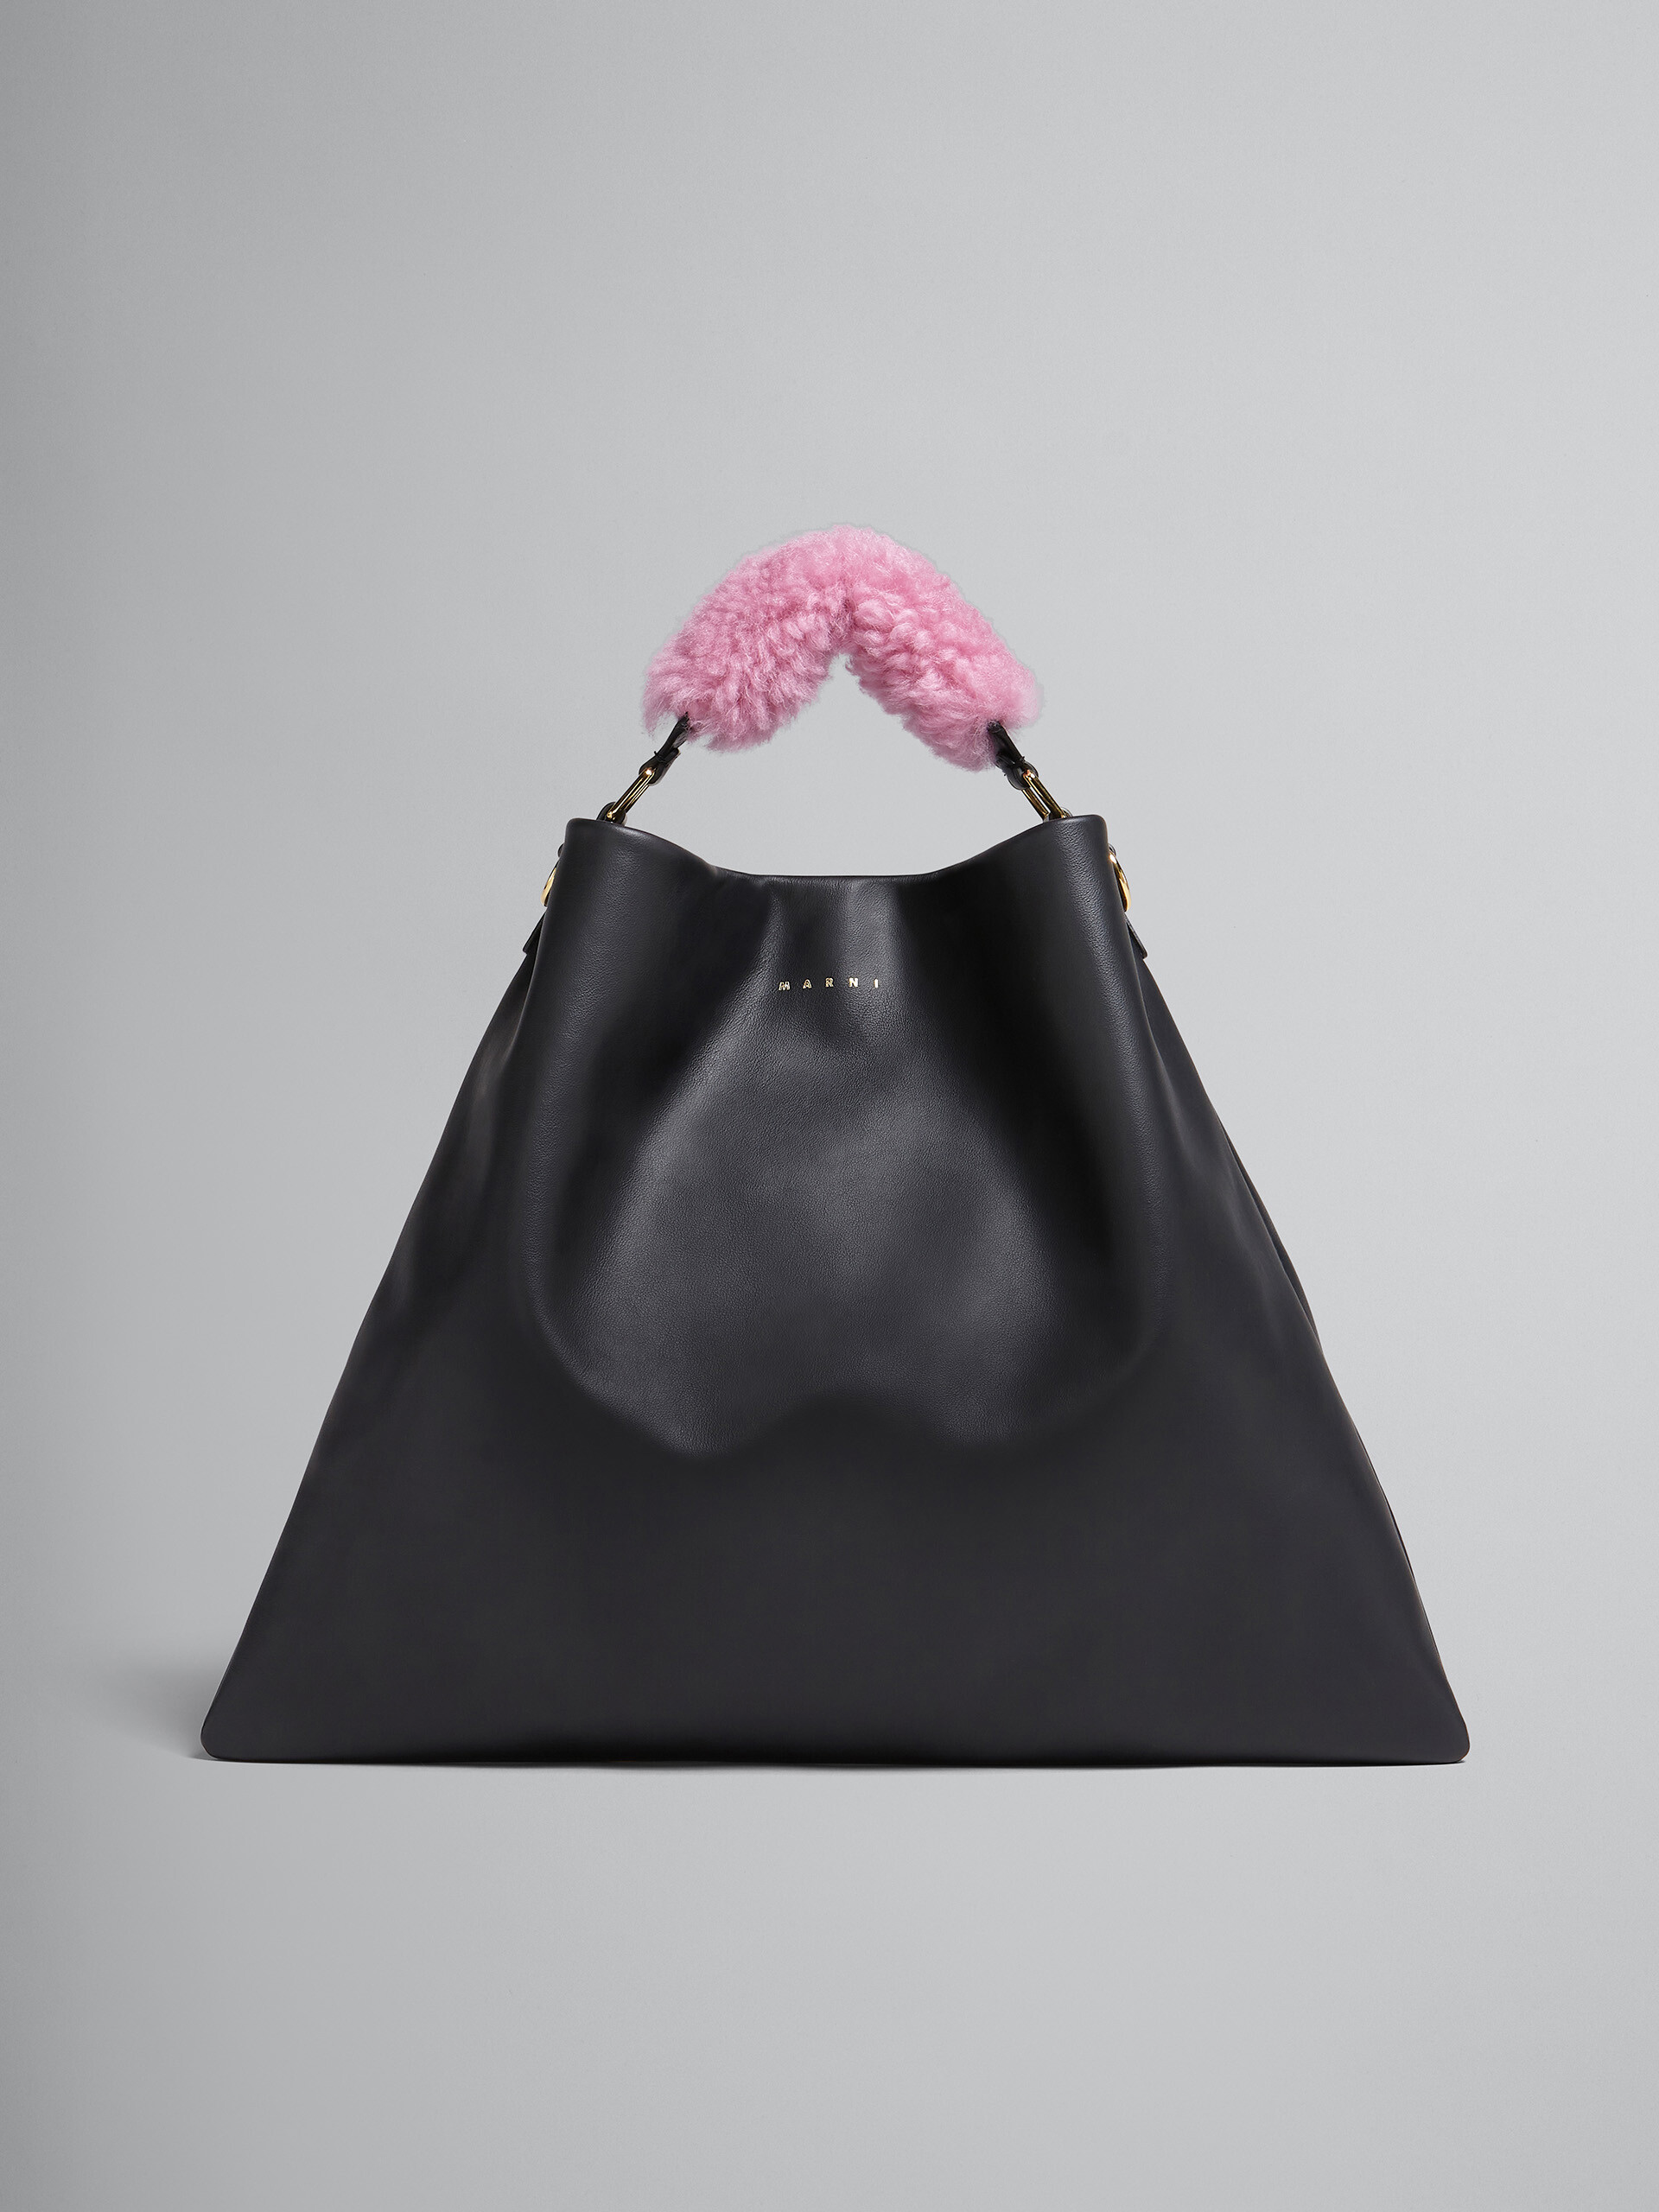 Venice medium bag in black leather - Shoulder Bag - Image 1